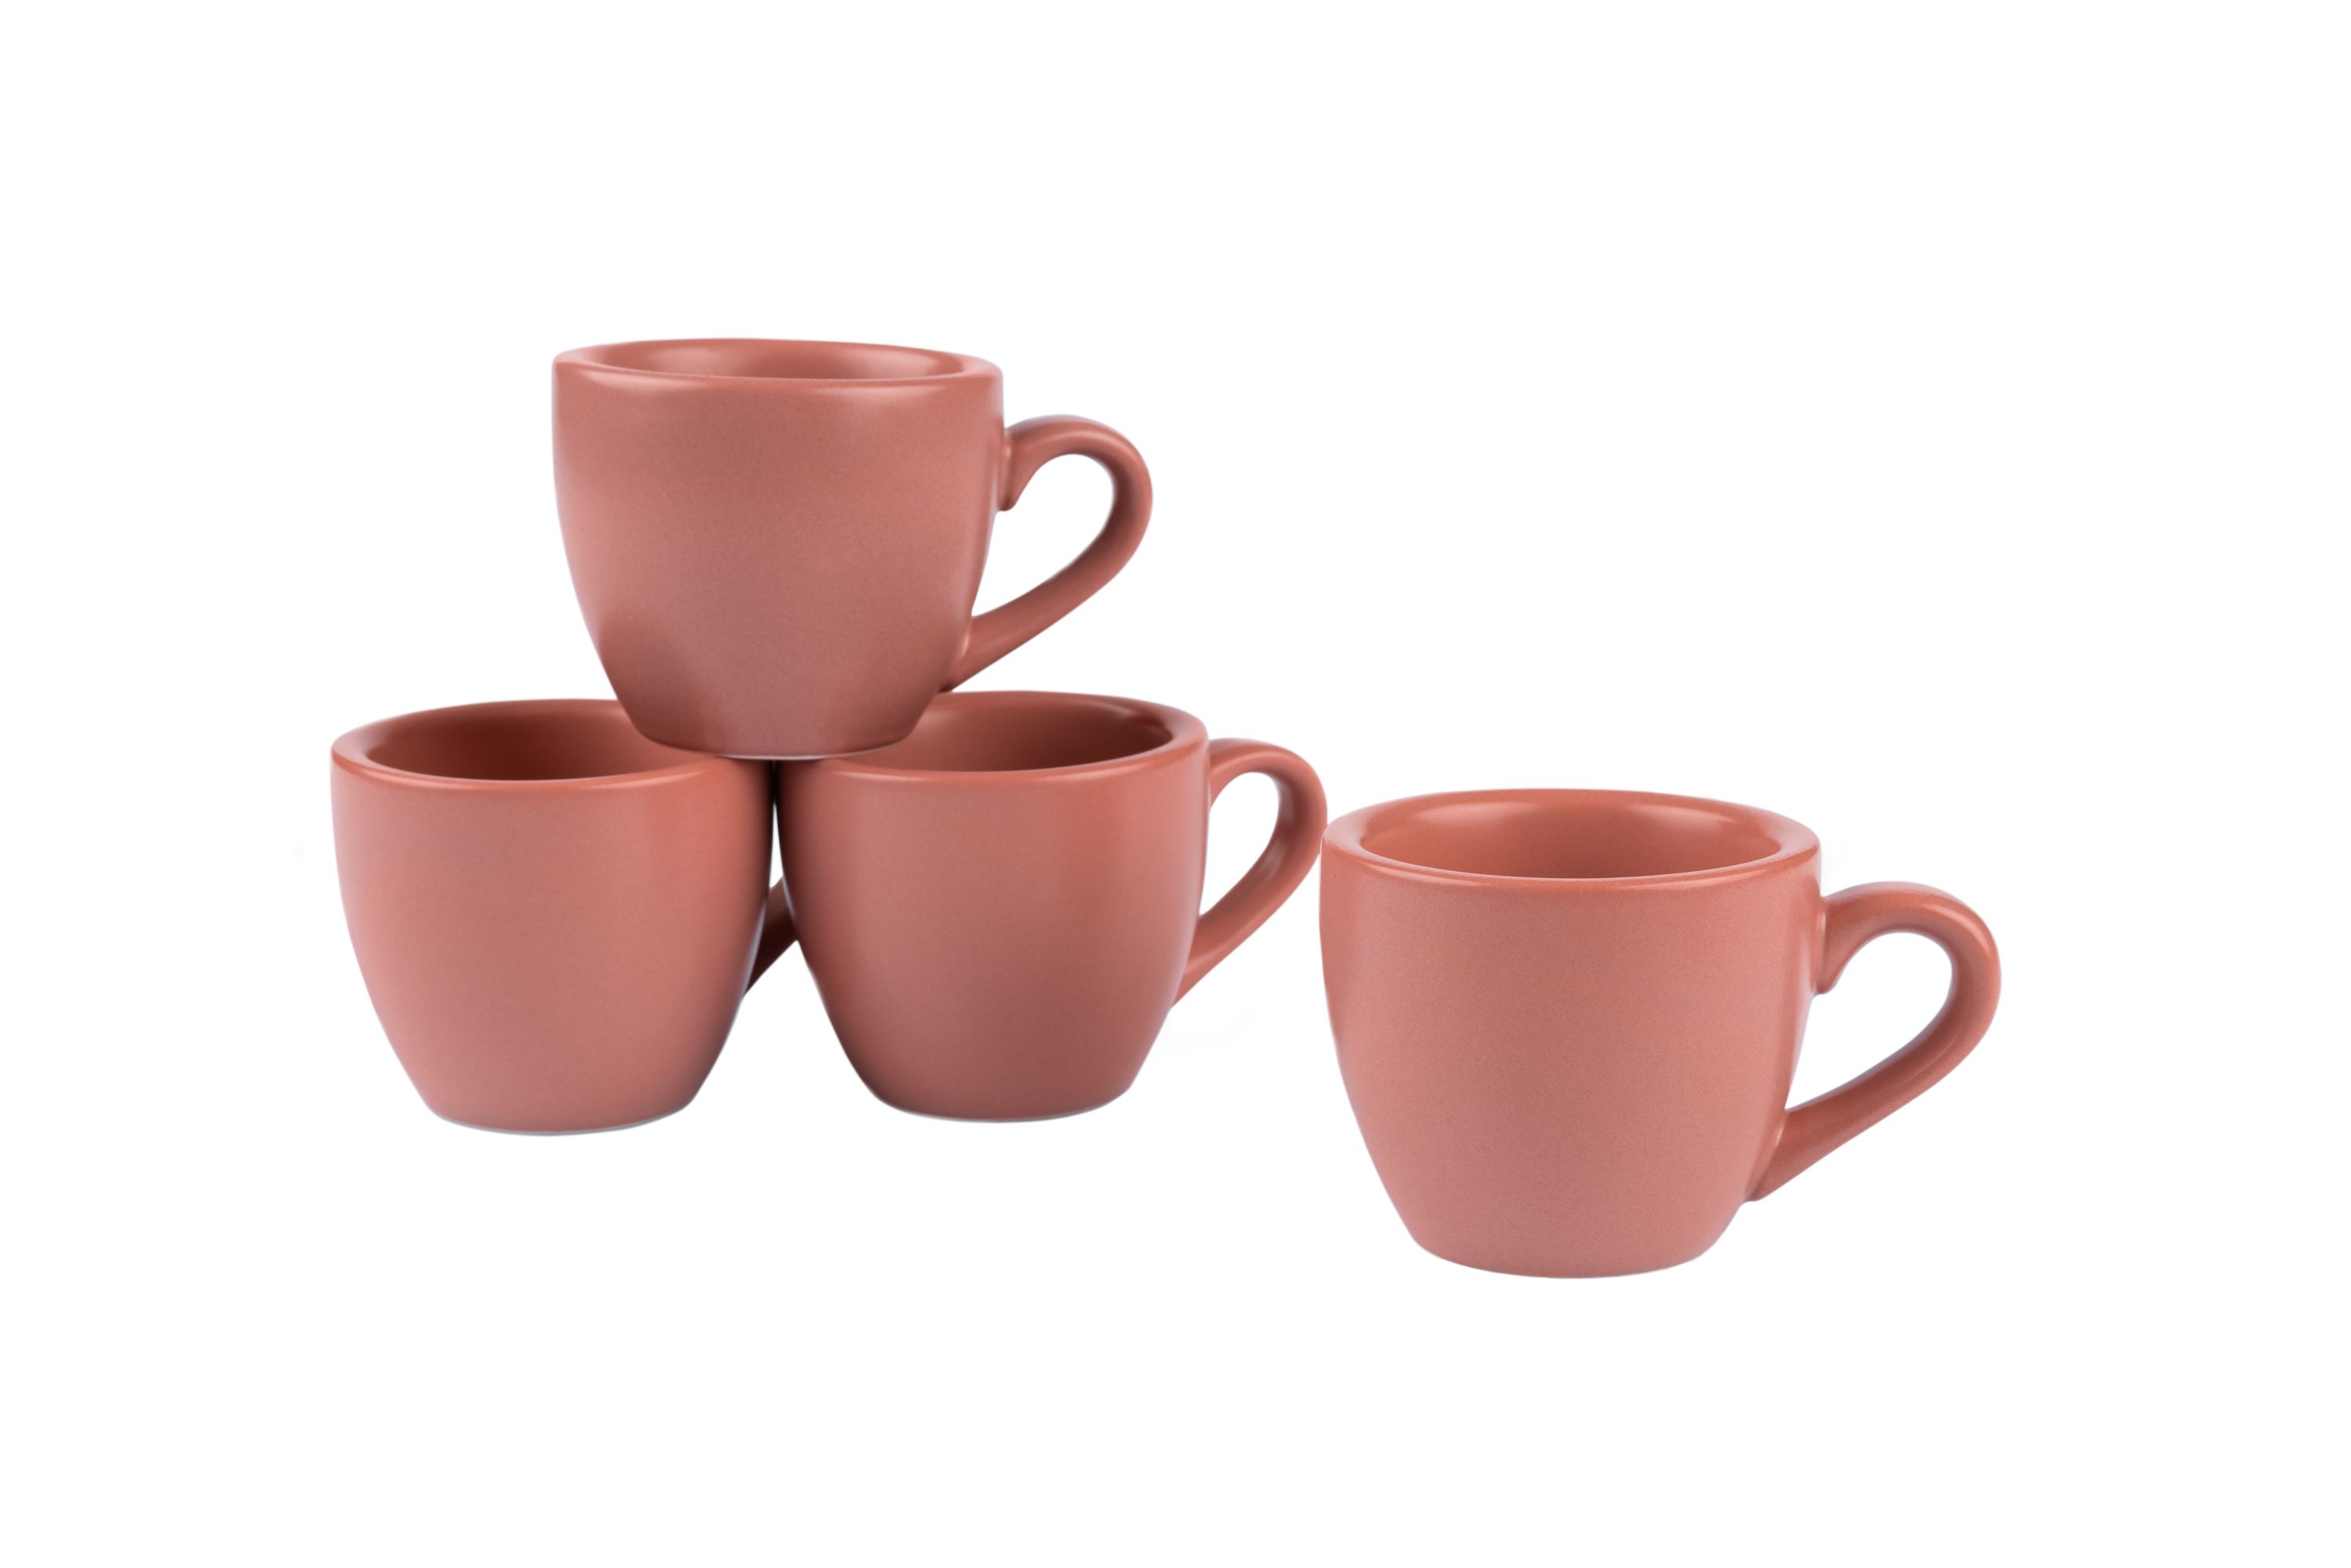 Mehrere rötliche Stoneware-Tassen